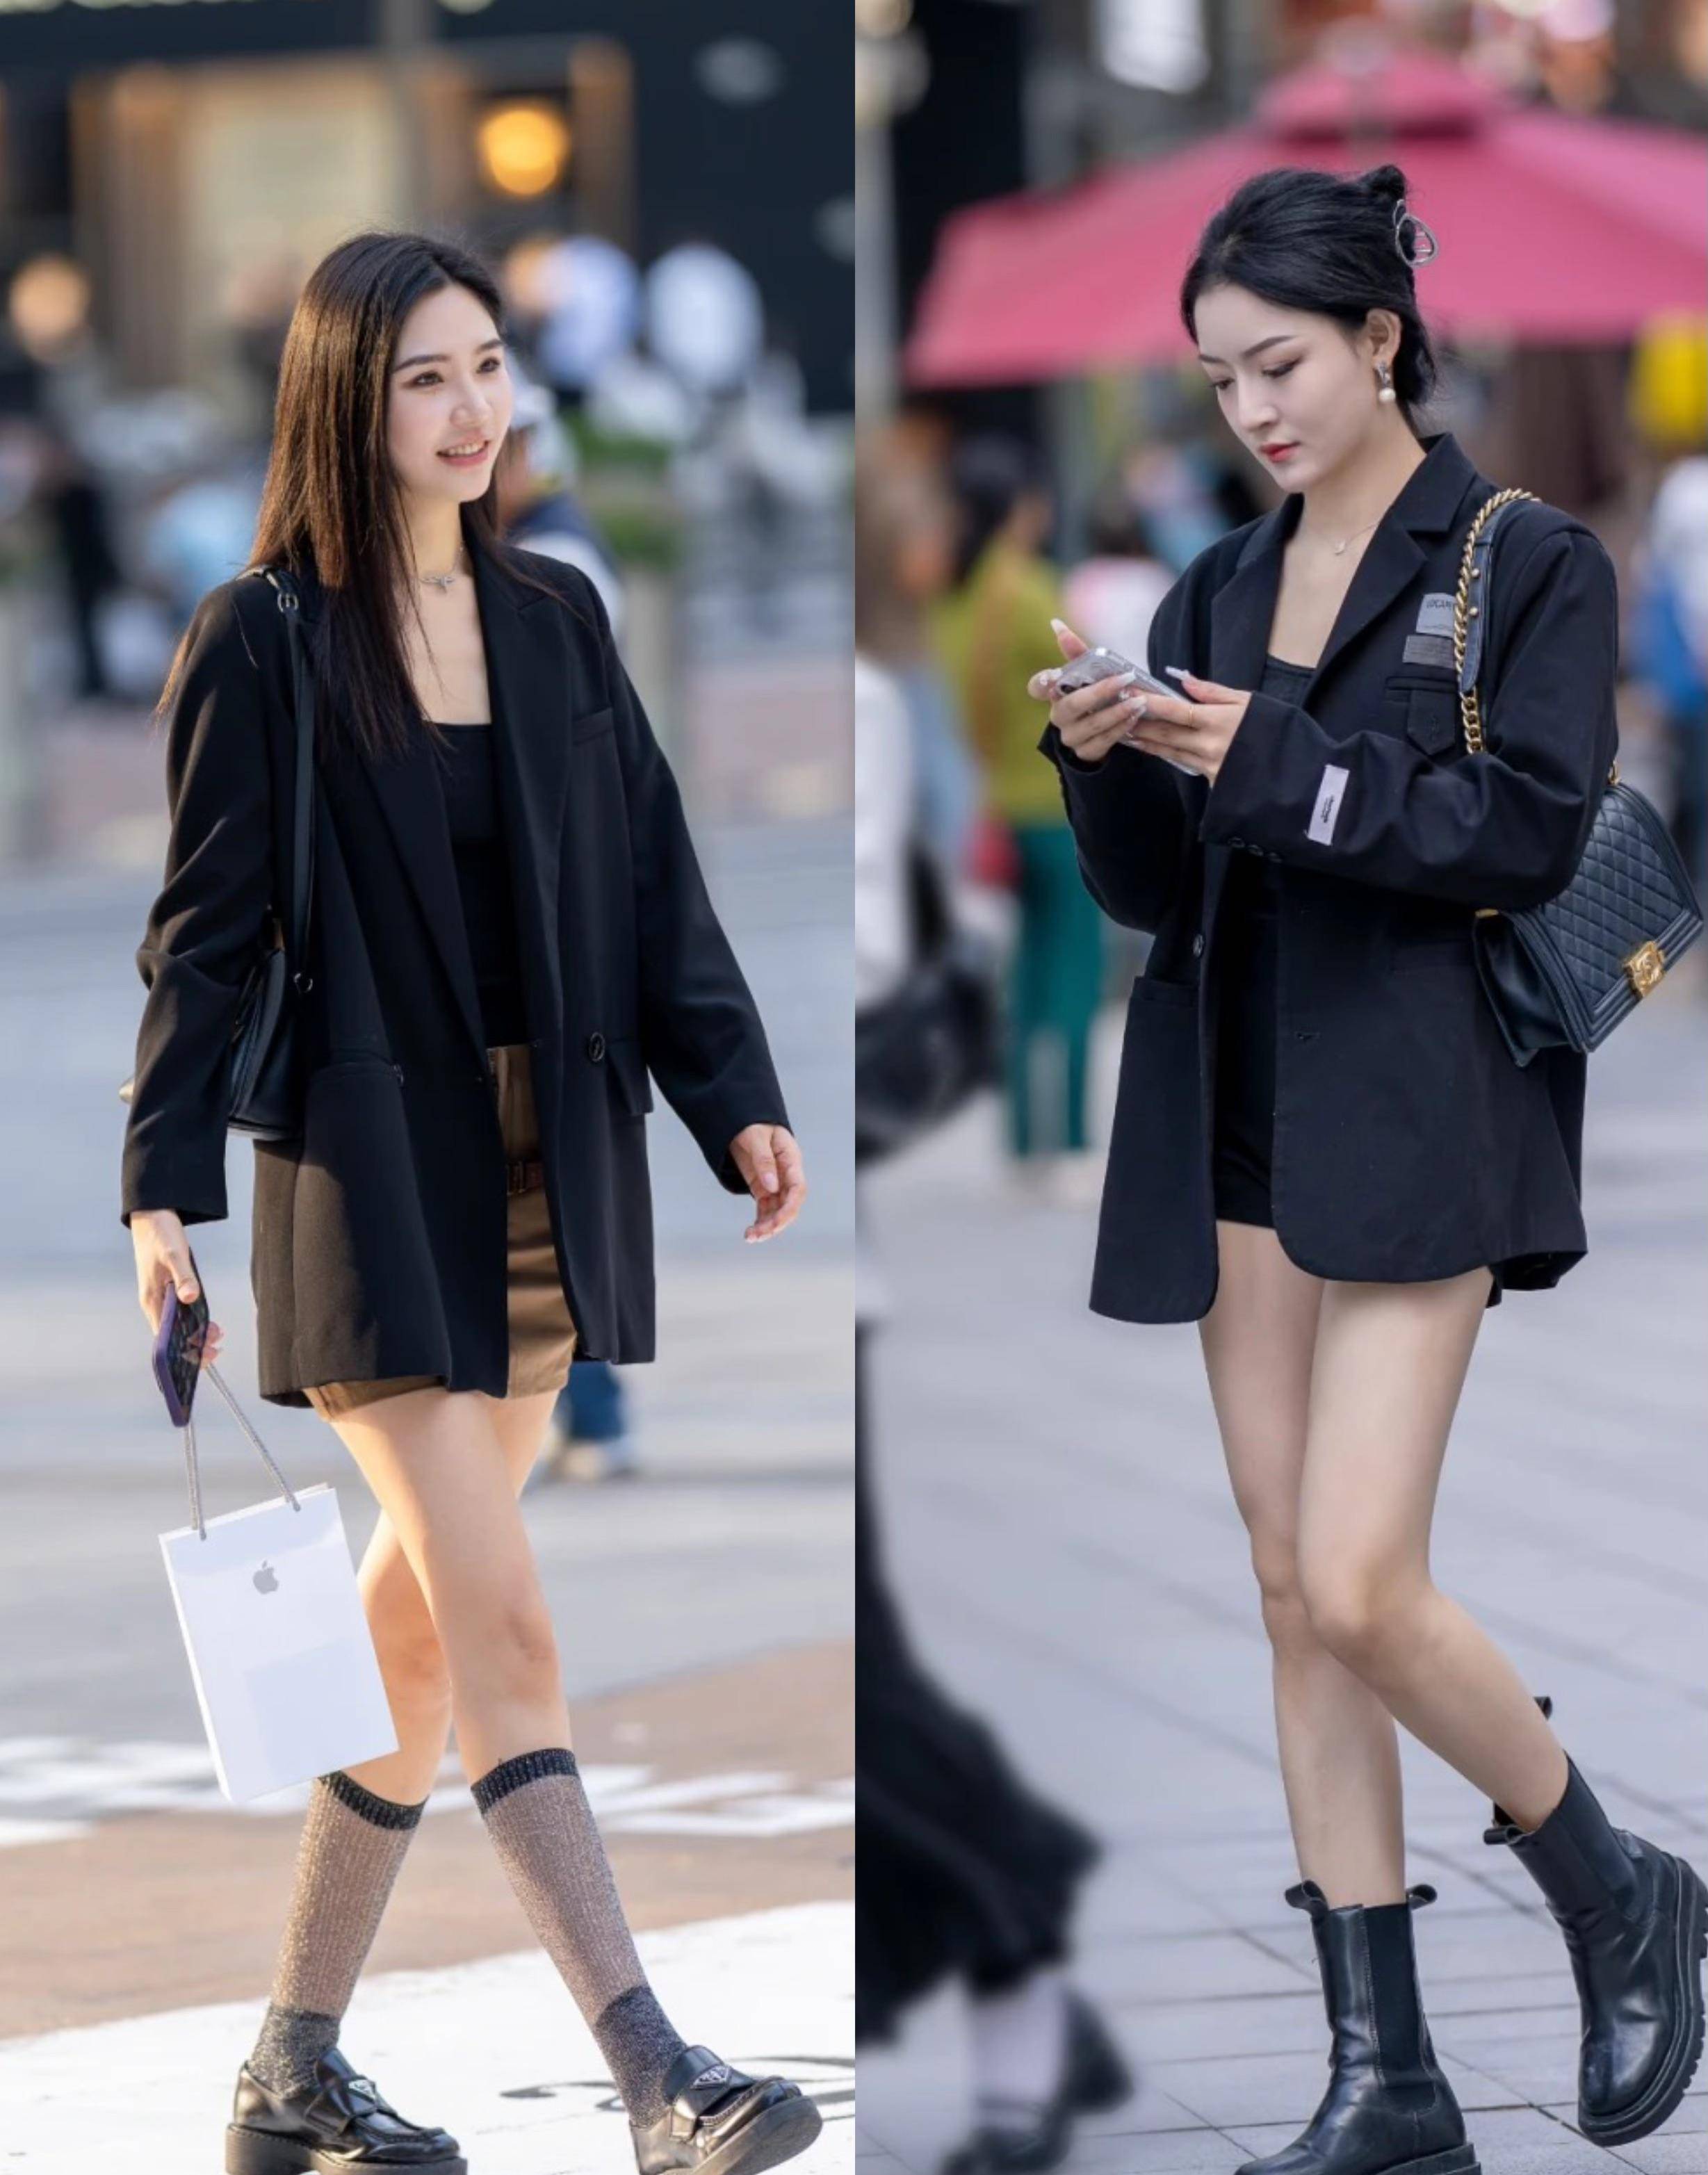 看重庆街拍才明白:满大街都在穿一身黑,时髦帅气贼拉风!